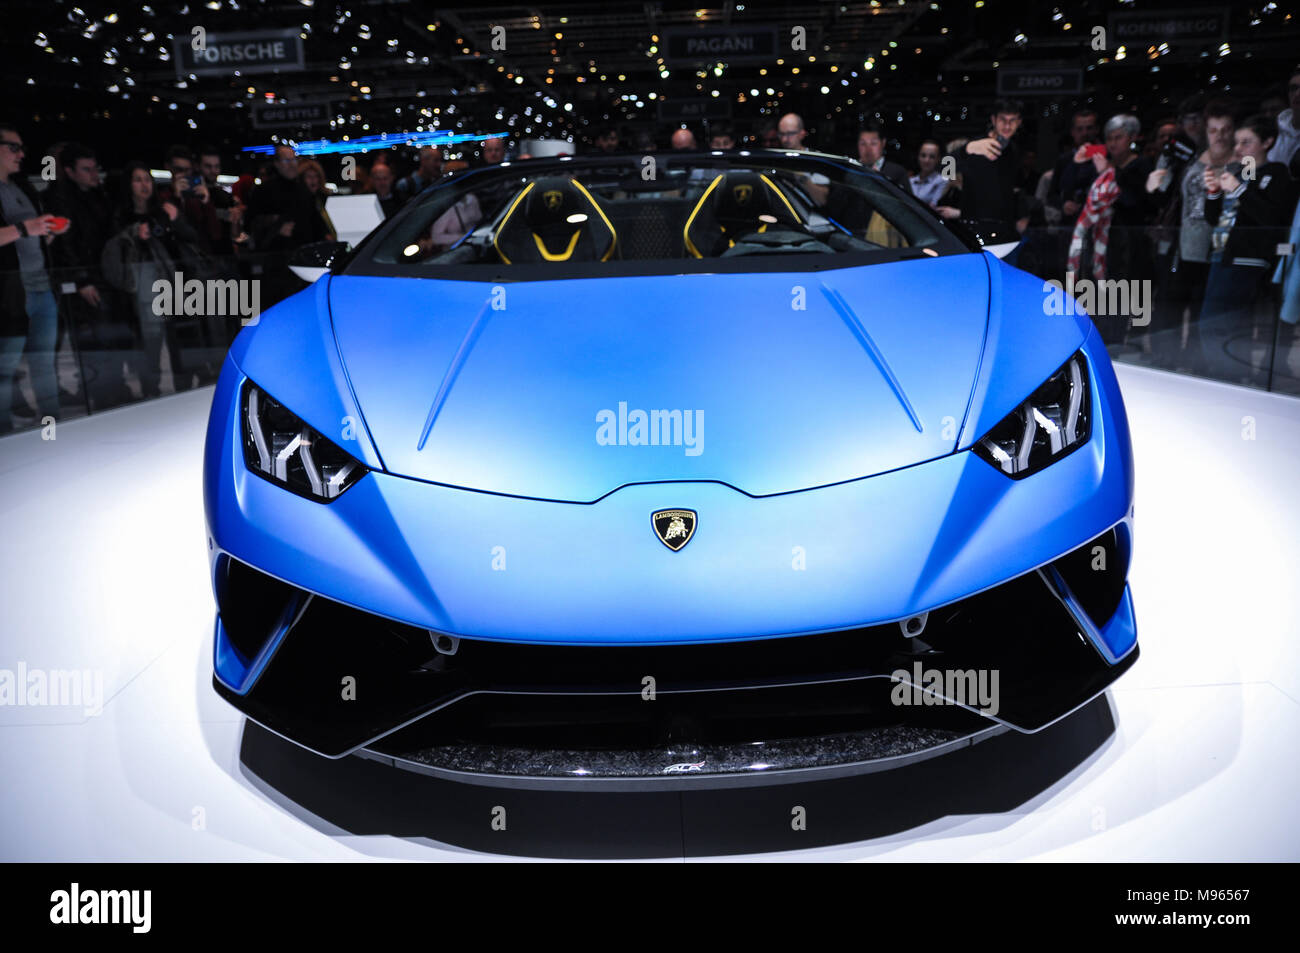 Genève, SUISSE - Le 17 mars 2018 : Lamborghini OURAGAN PERFORMANTE Voiture de sport ultra-rapide présenté lors de la 88e Salon International de l'Automobile de Genève Banque D'Images